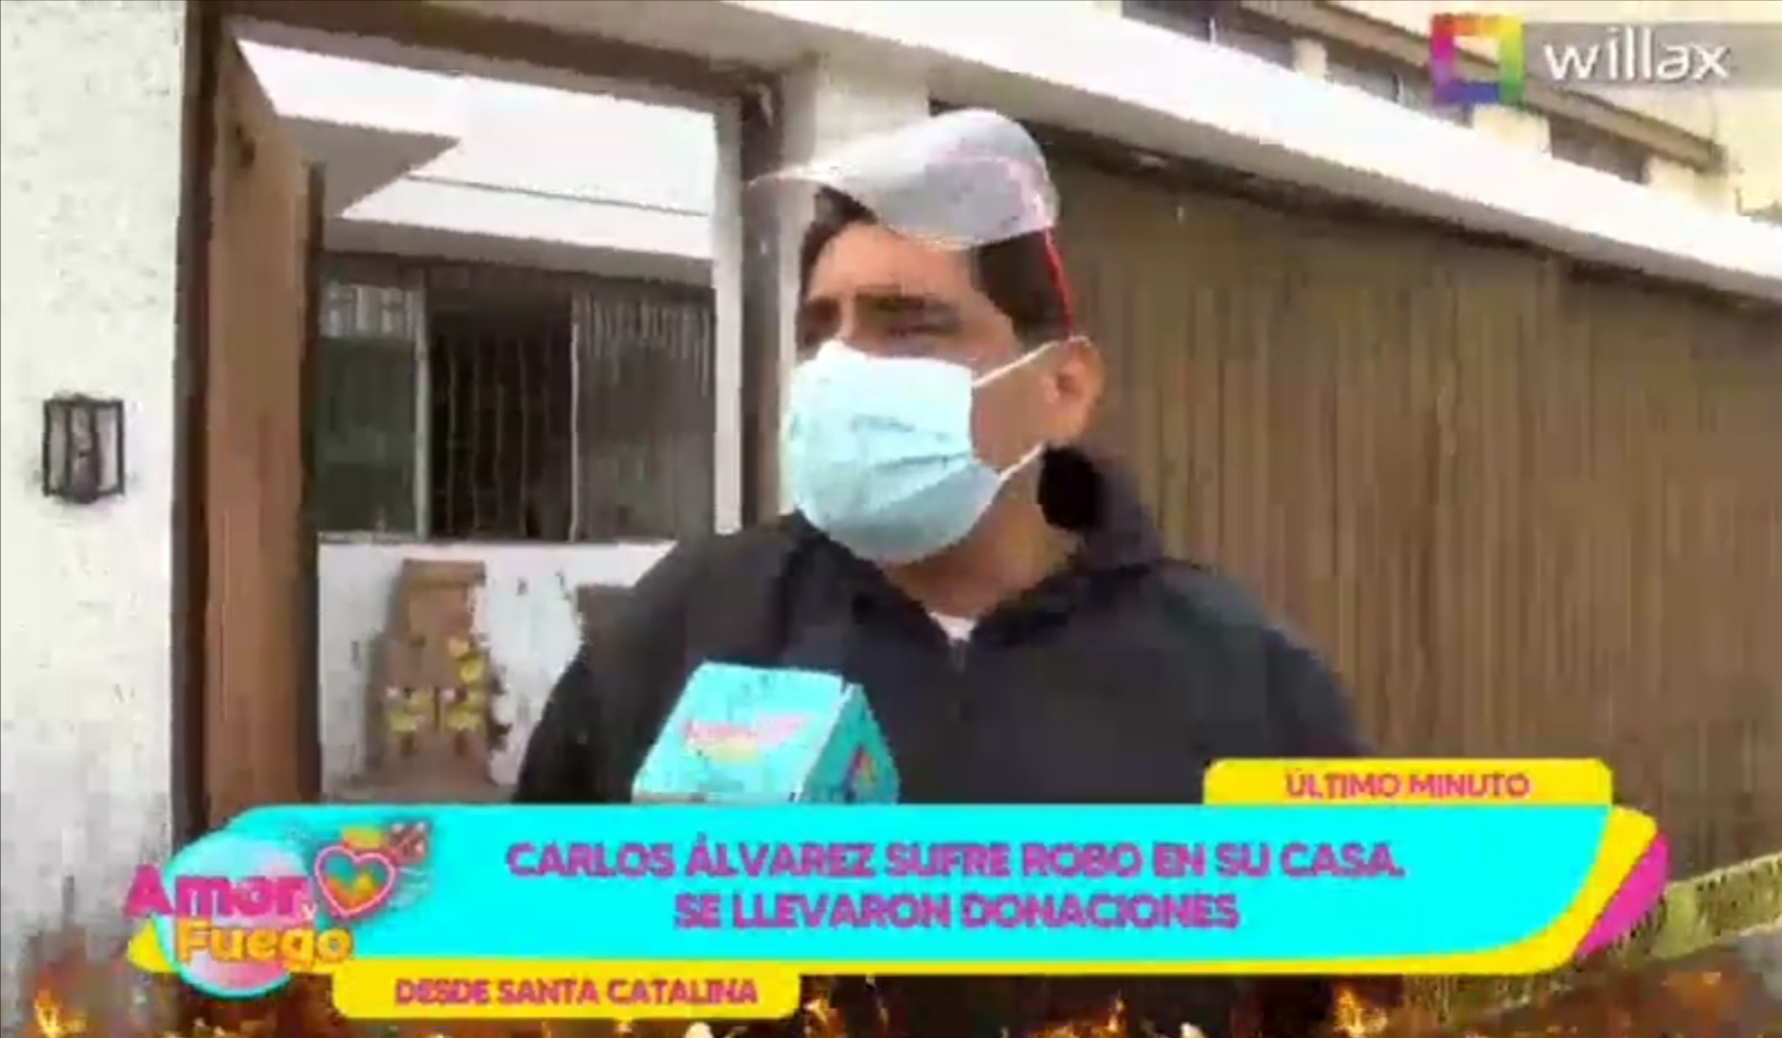 Amor y Fuego: Carlos Álvarez sufre robo en su casa, se llevaron donaciones